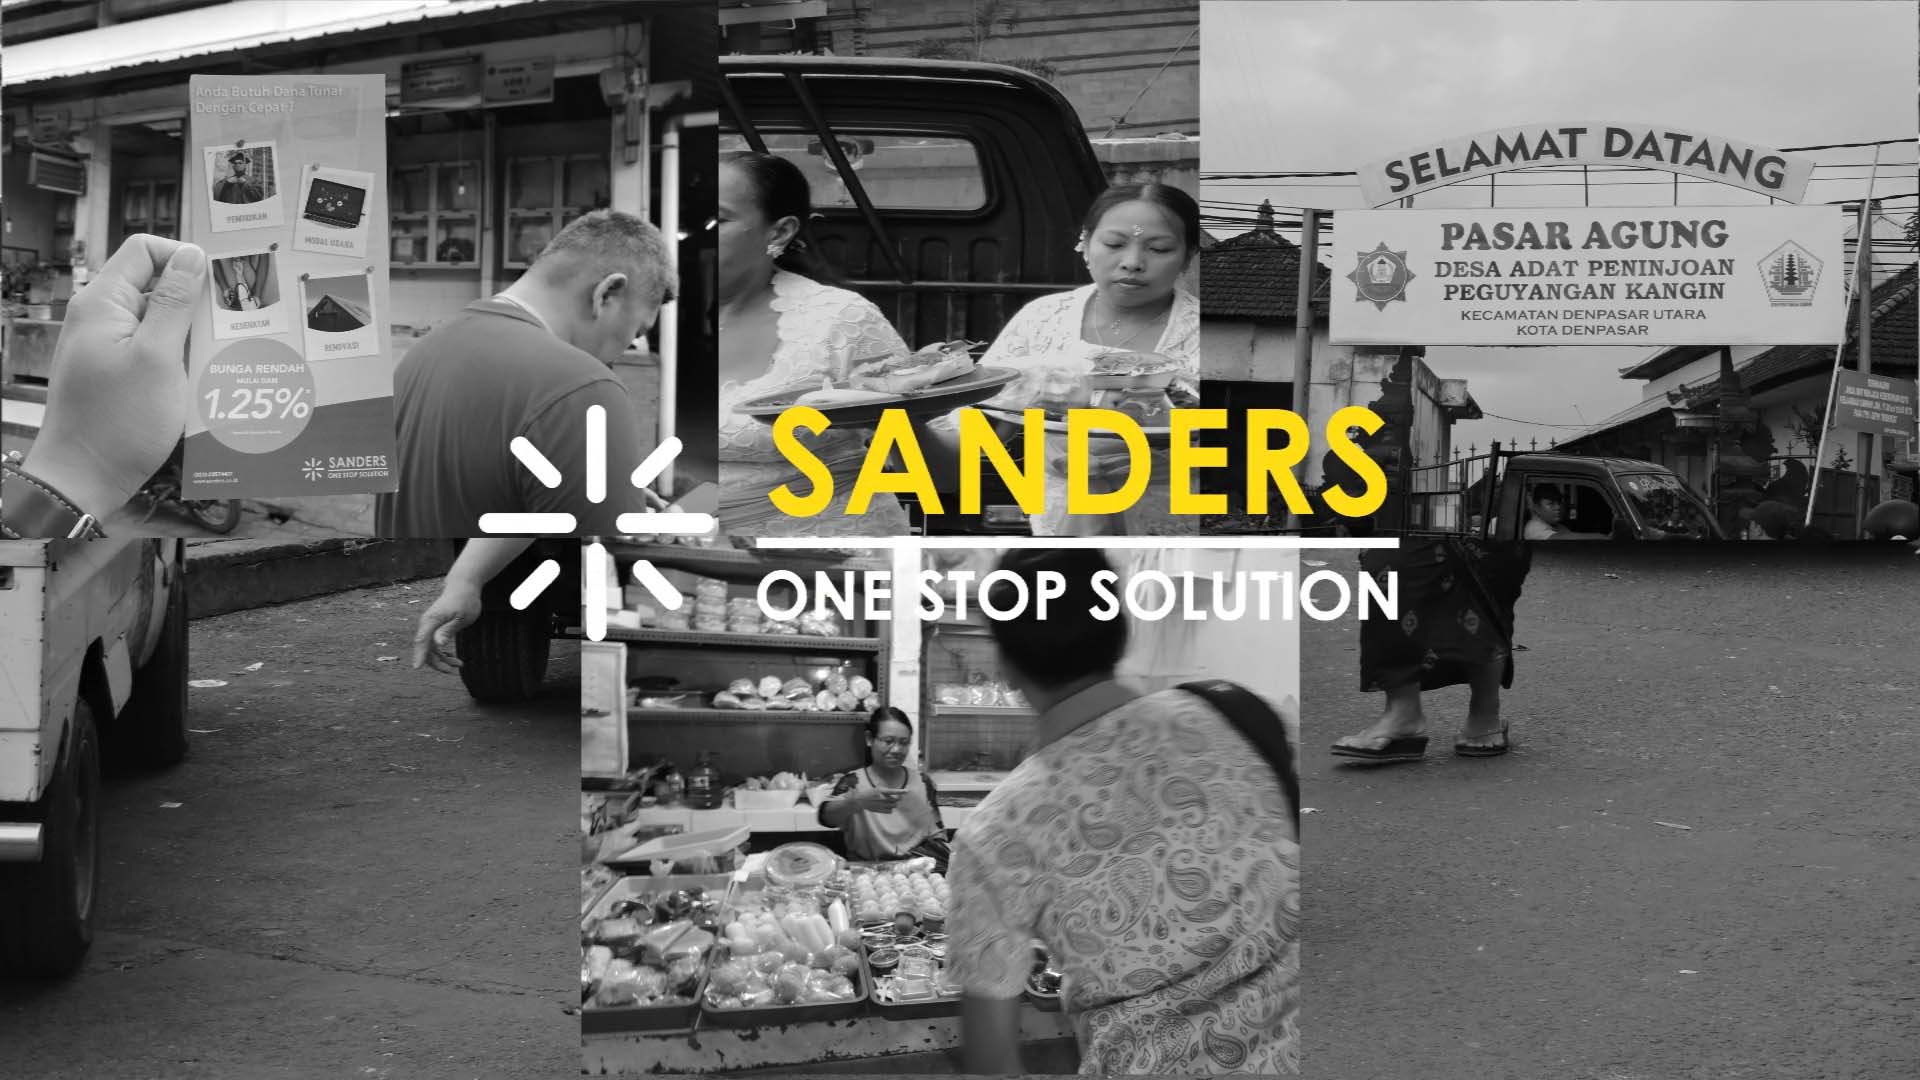 Sosialisasi Sanders di Bali